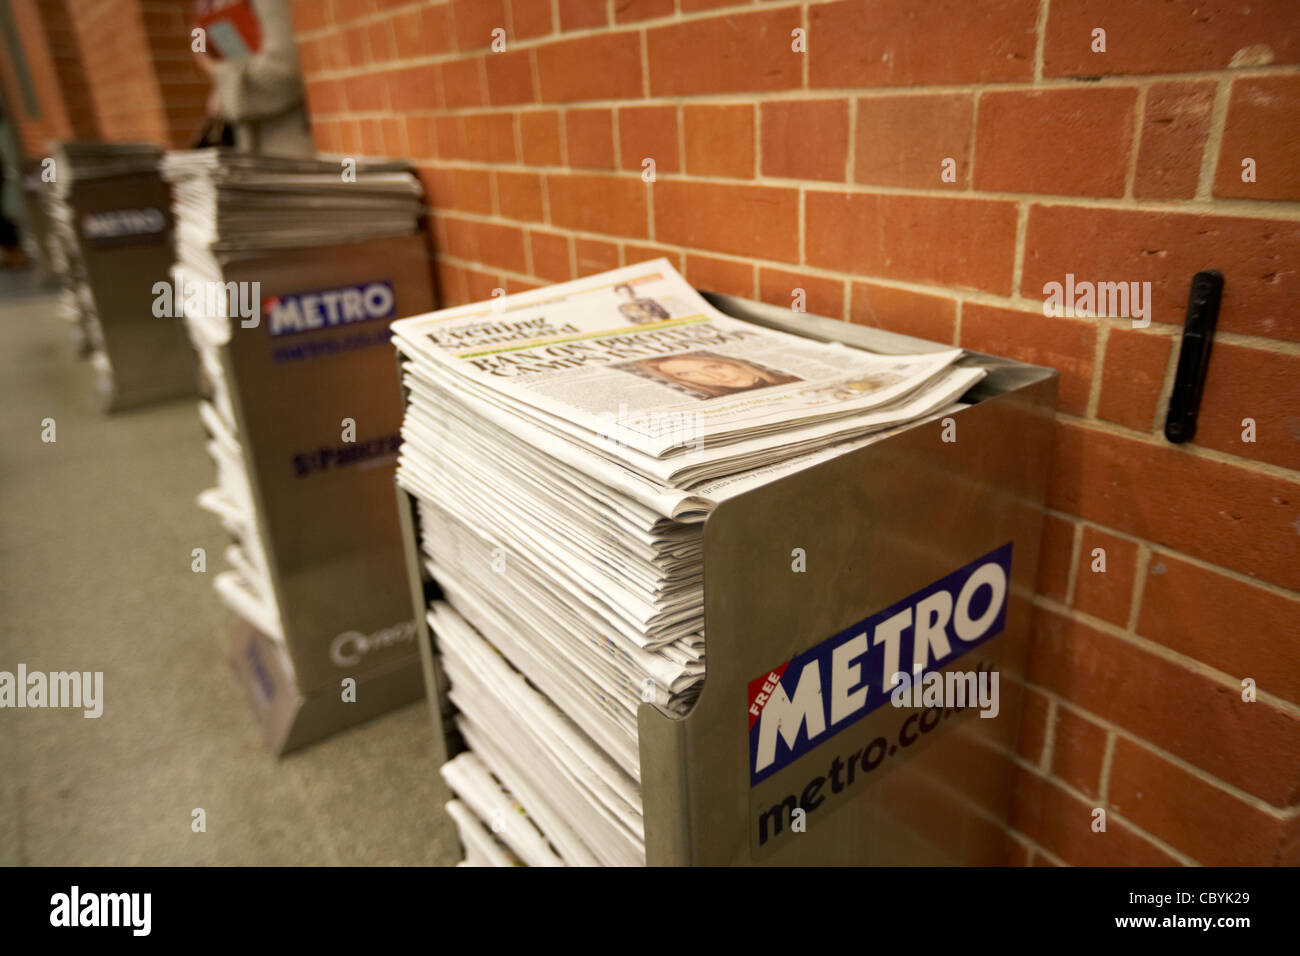 haufenweise kostenlose lokale London Zeitung Metro in England UK Vereinigtes Königreich Stockfoto